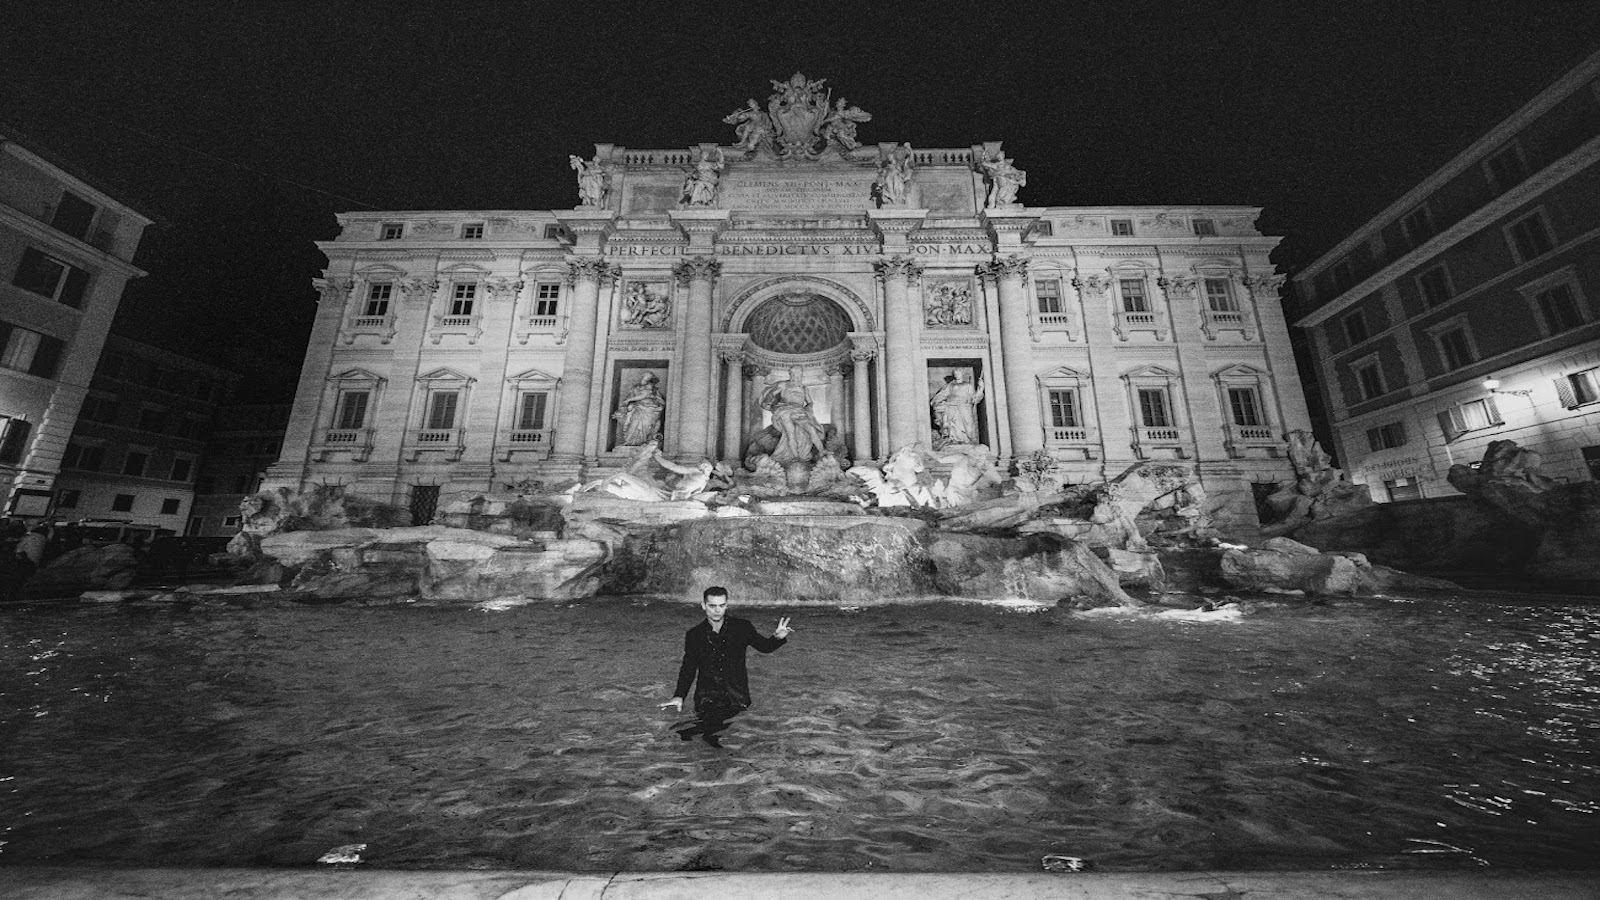 Berlino: le foto di Pedro Alonso a Roma, in vista dell'uscita su Netflix dello spin-off de La casa di carta